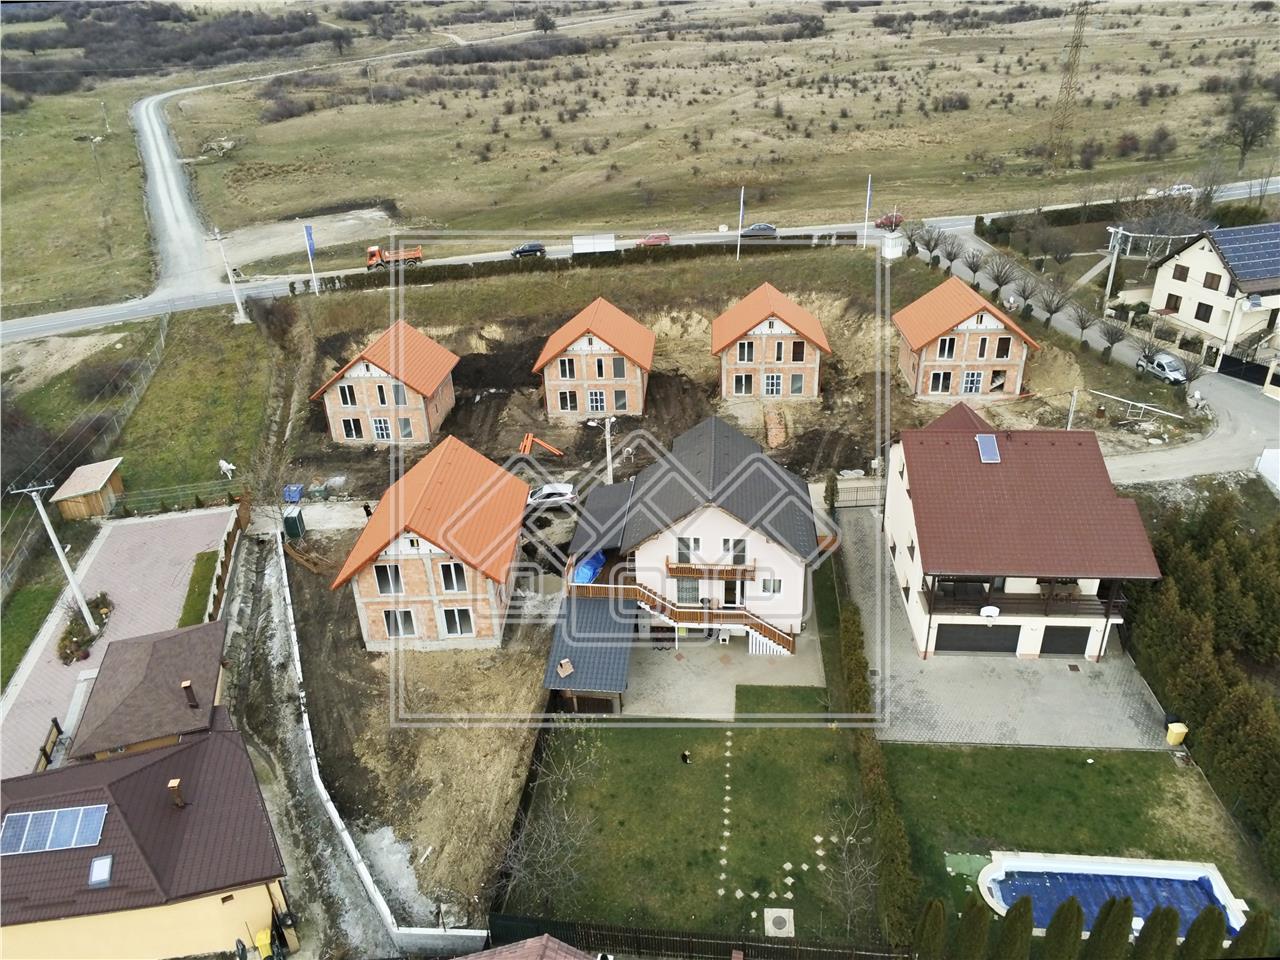 Casa de vanzare in Sibiu - cartier de case - camere spatioase, 3 bai